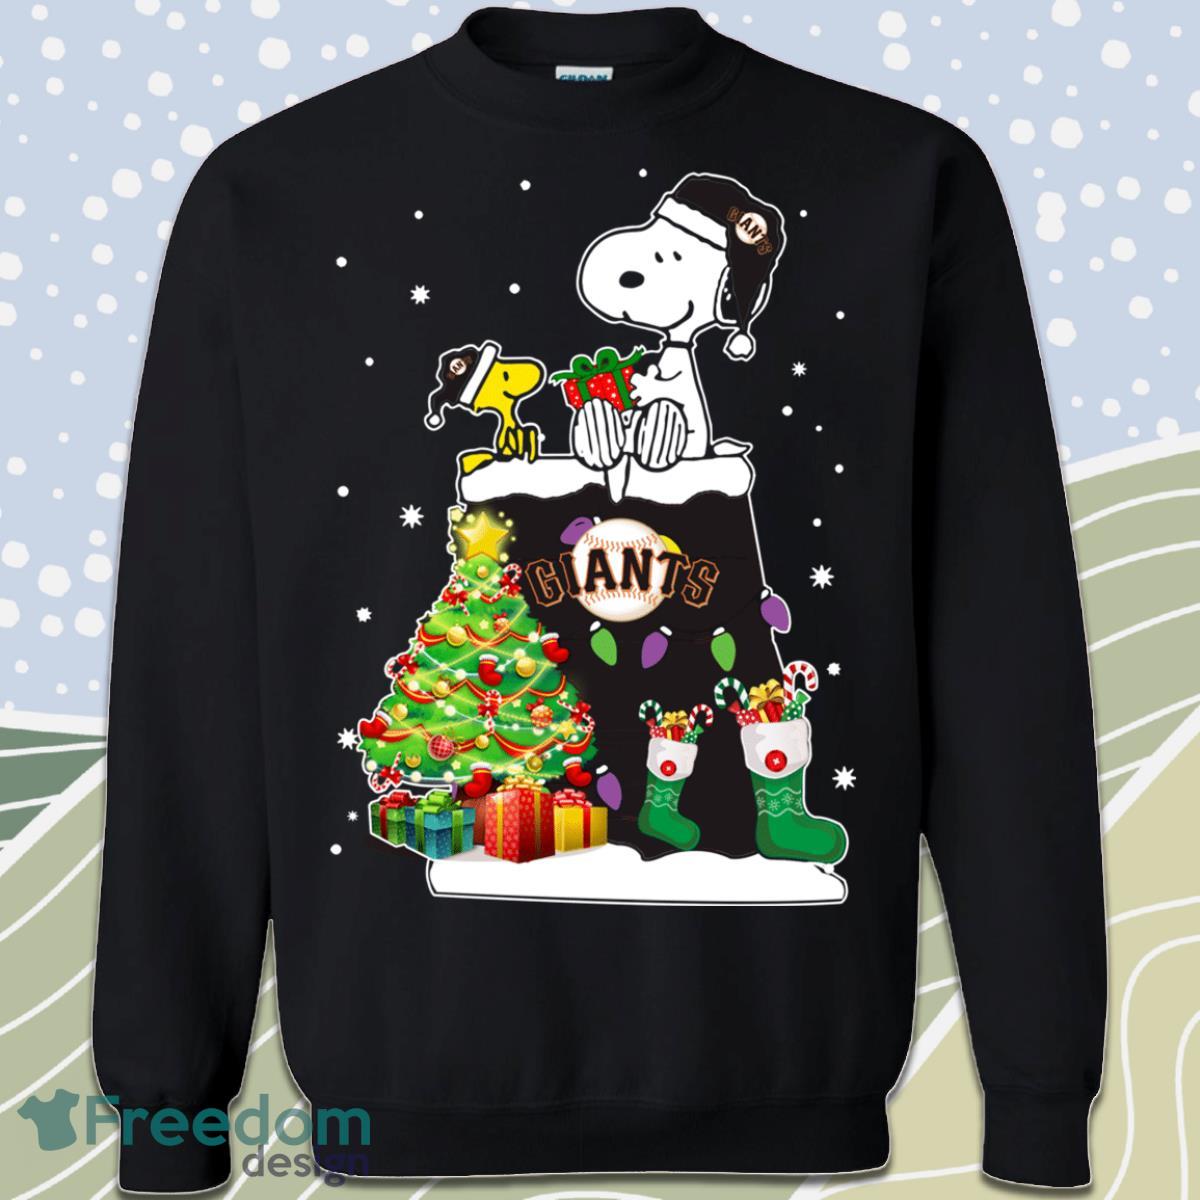 San Francisco Giants Snoopy Woodstock Christmas Sweatshirt Product Photo 1